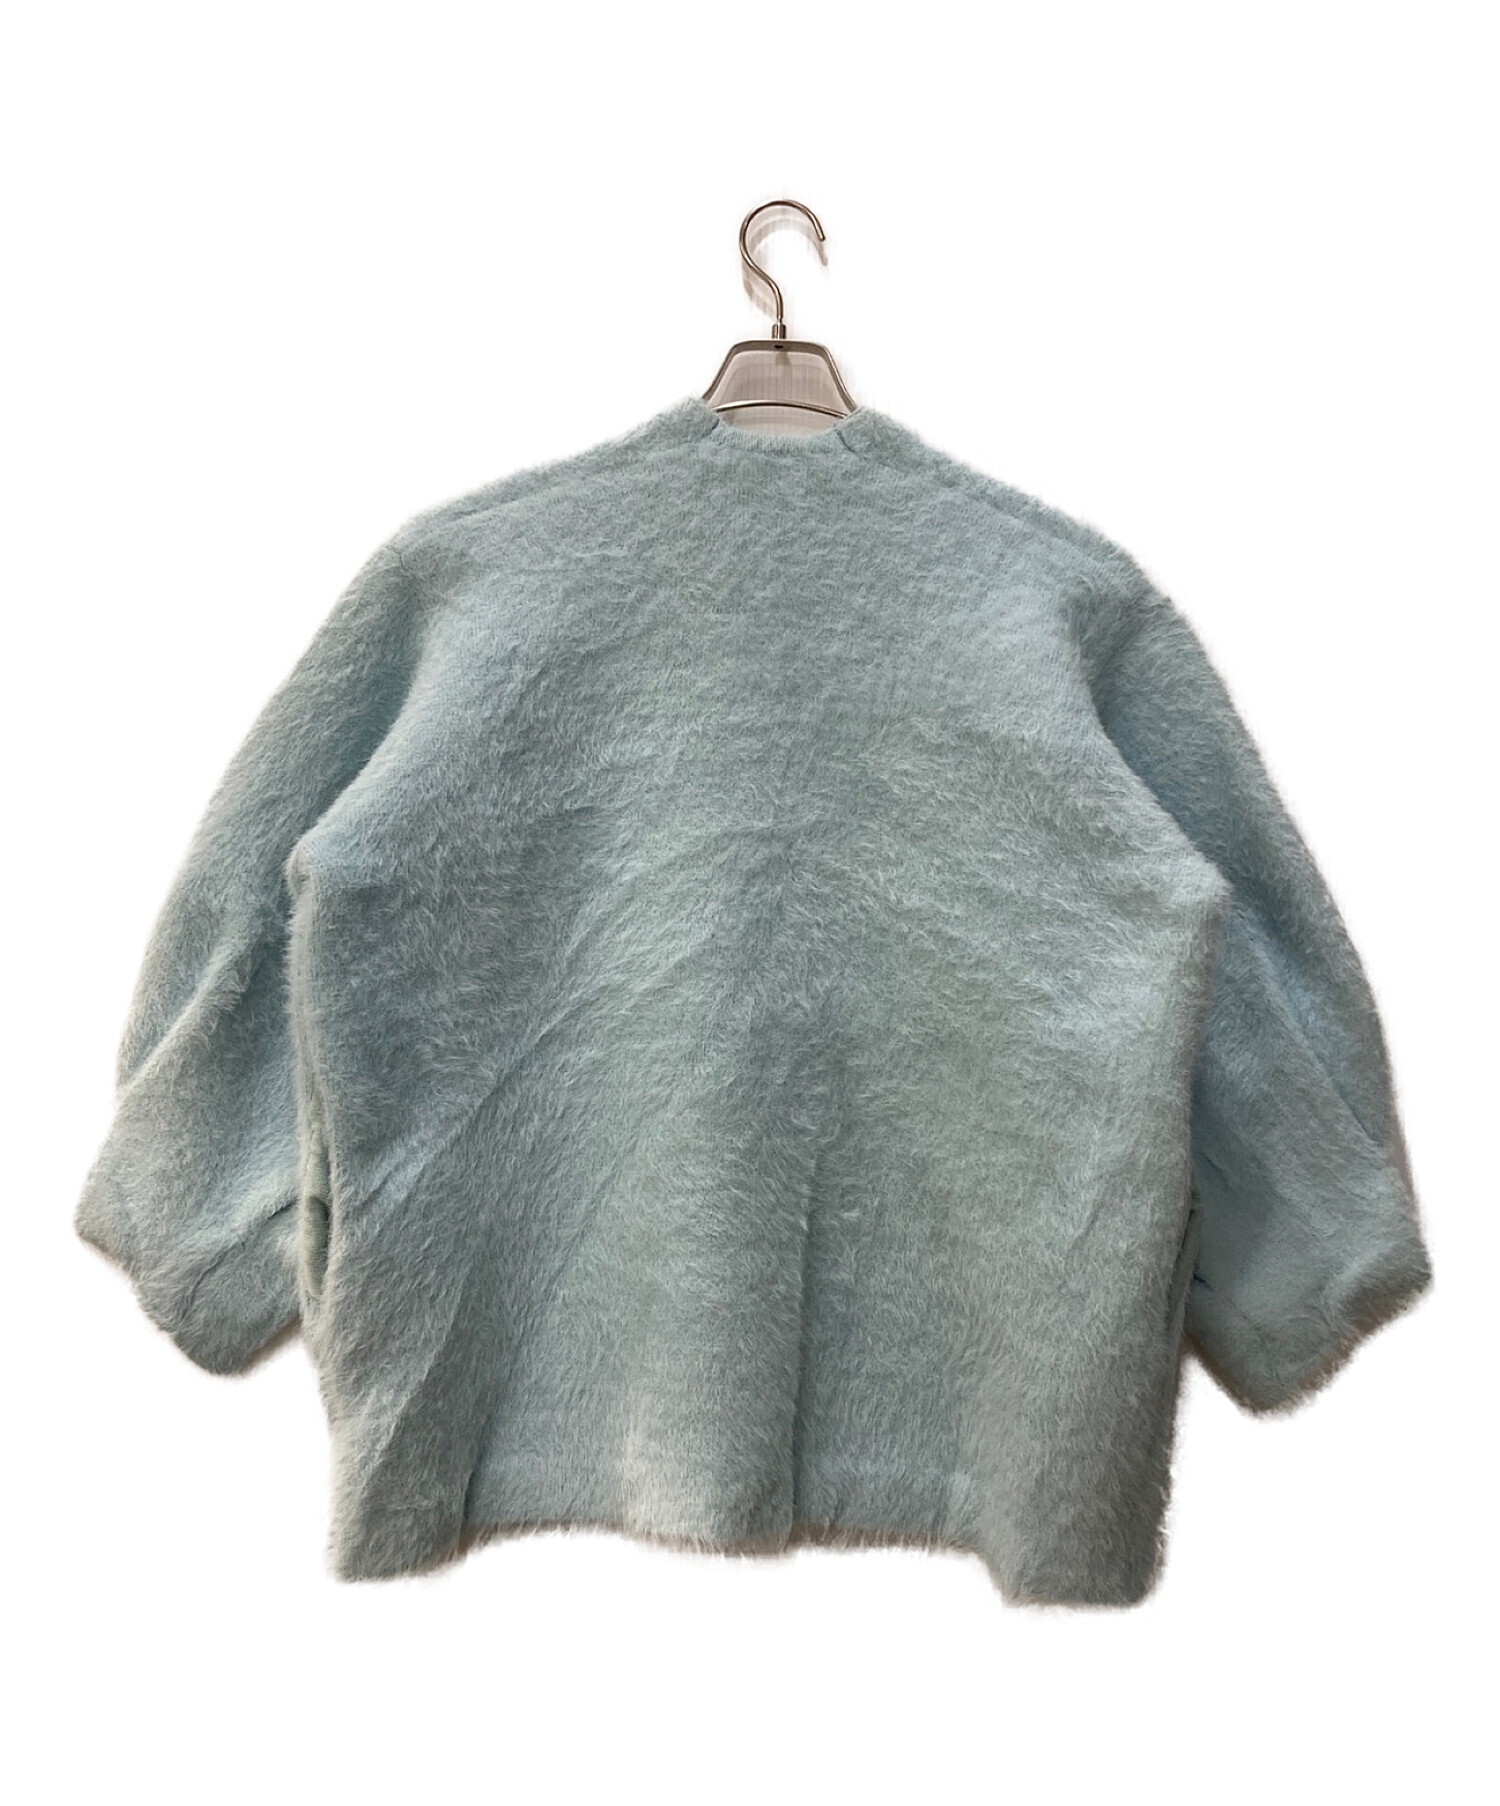 Alia (アリア) feather knit cardigan ライトブルー サイズ:F